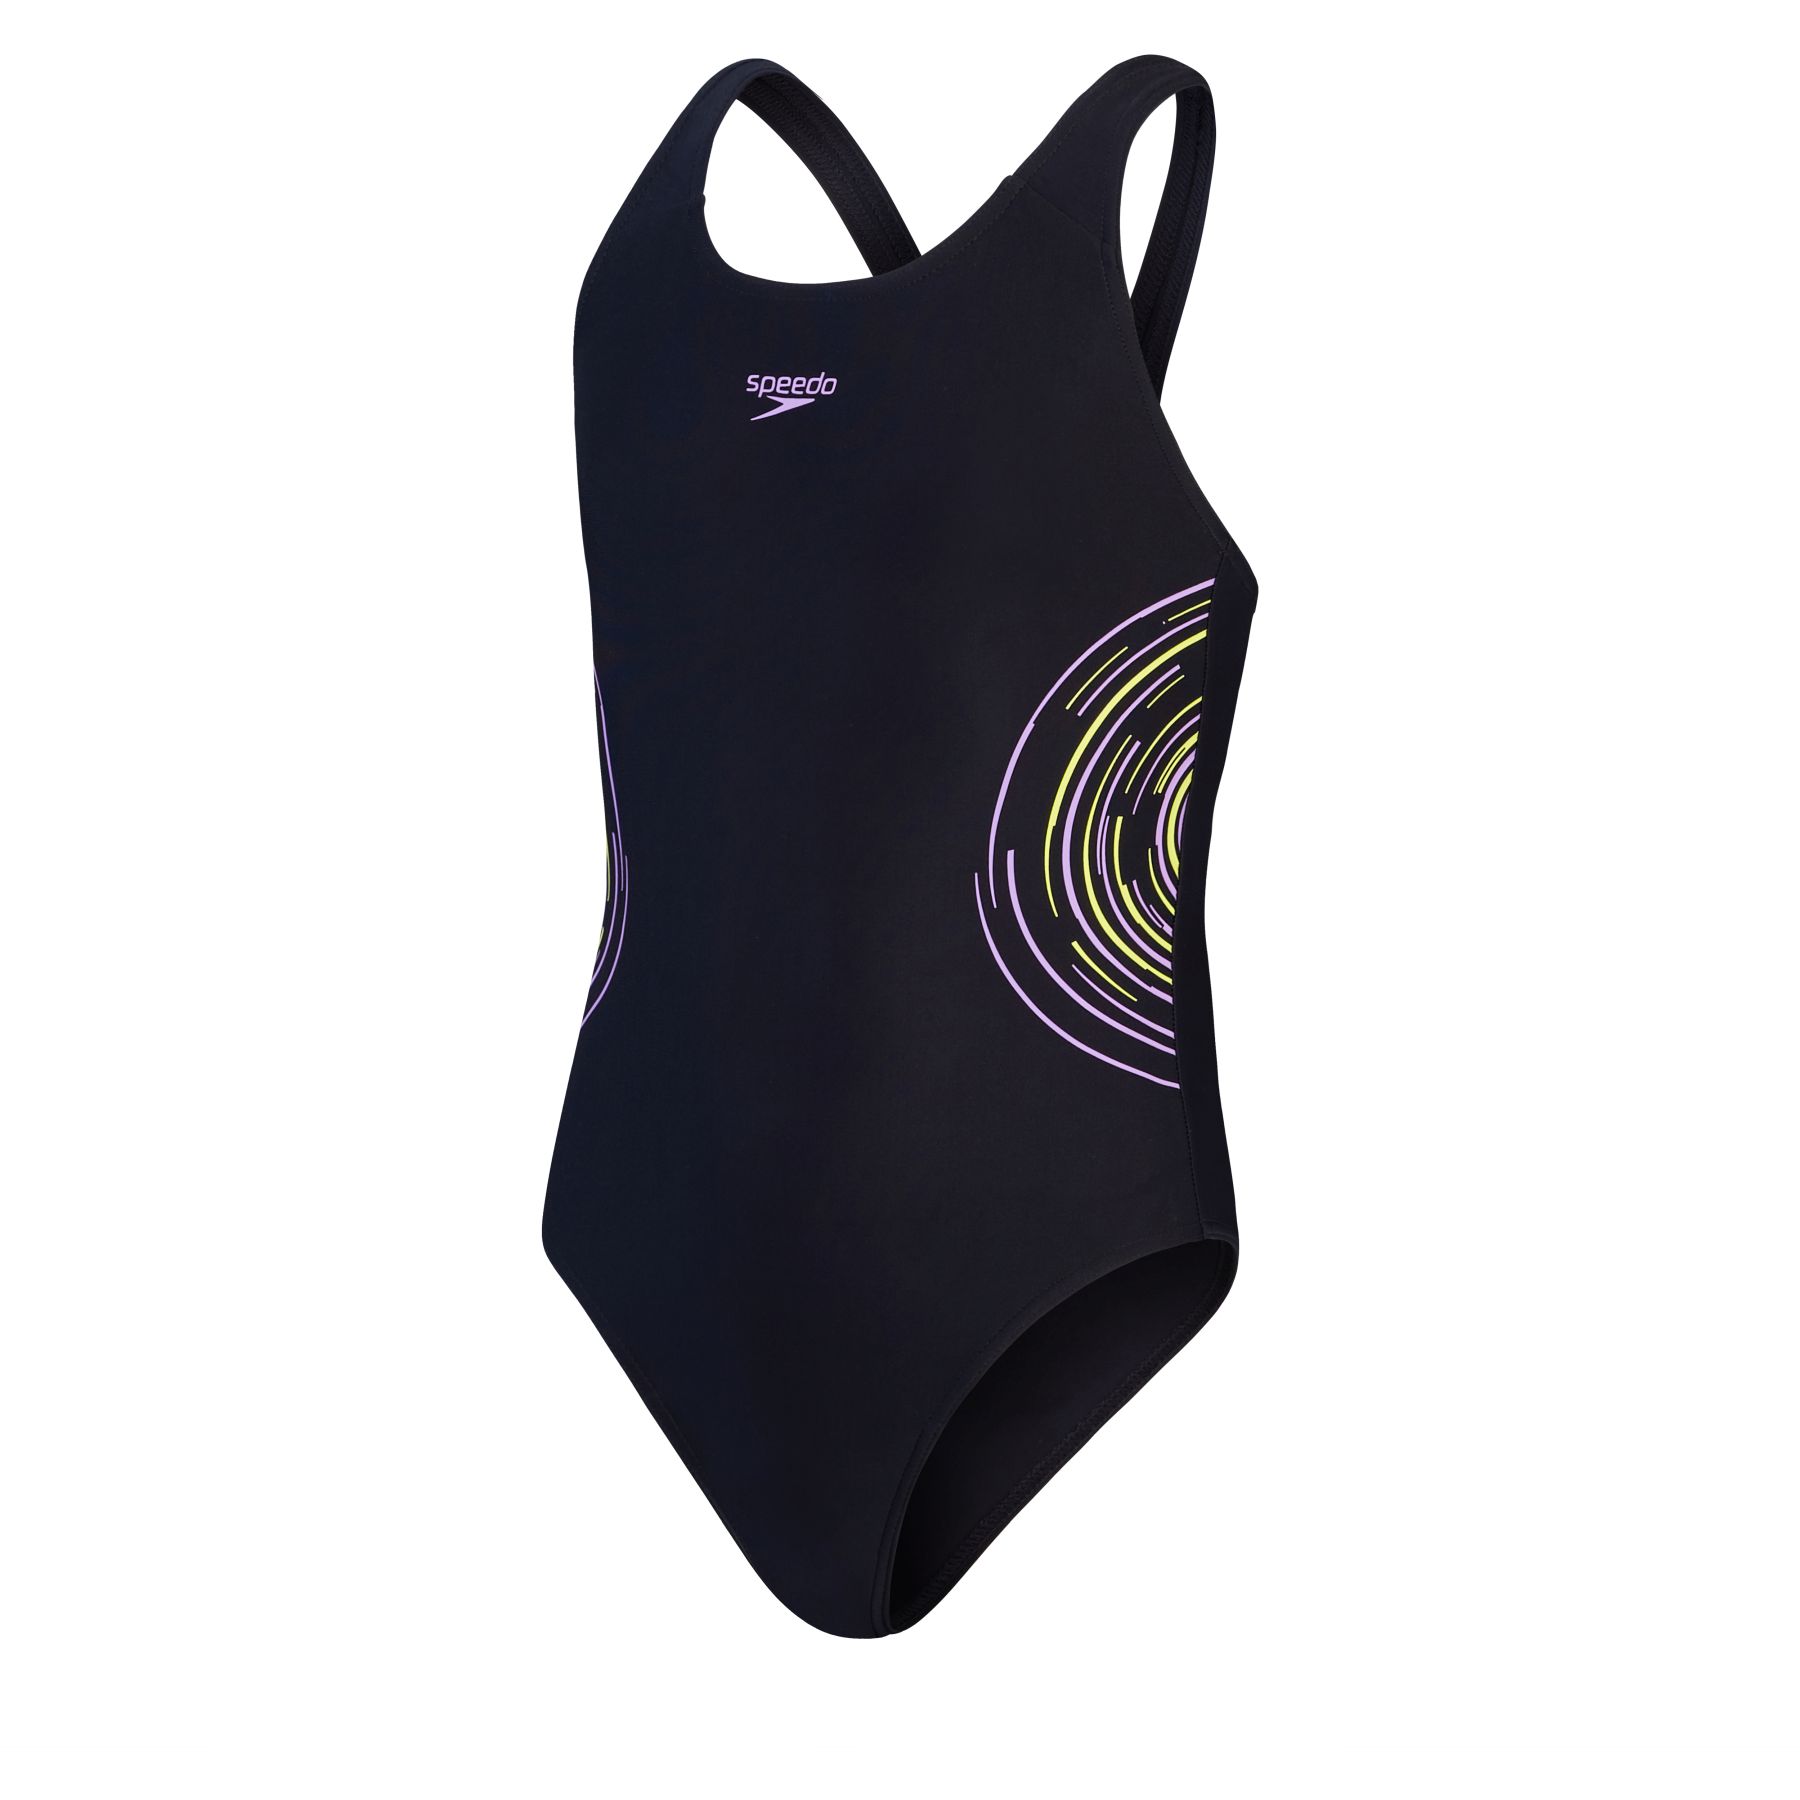 Produktbild von Speedo Placement Muscleback Badeanzug Mädchen - black/sweet purple/lemon drizzle